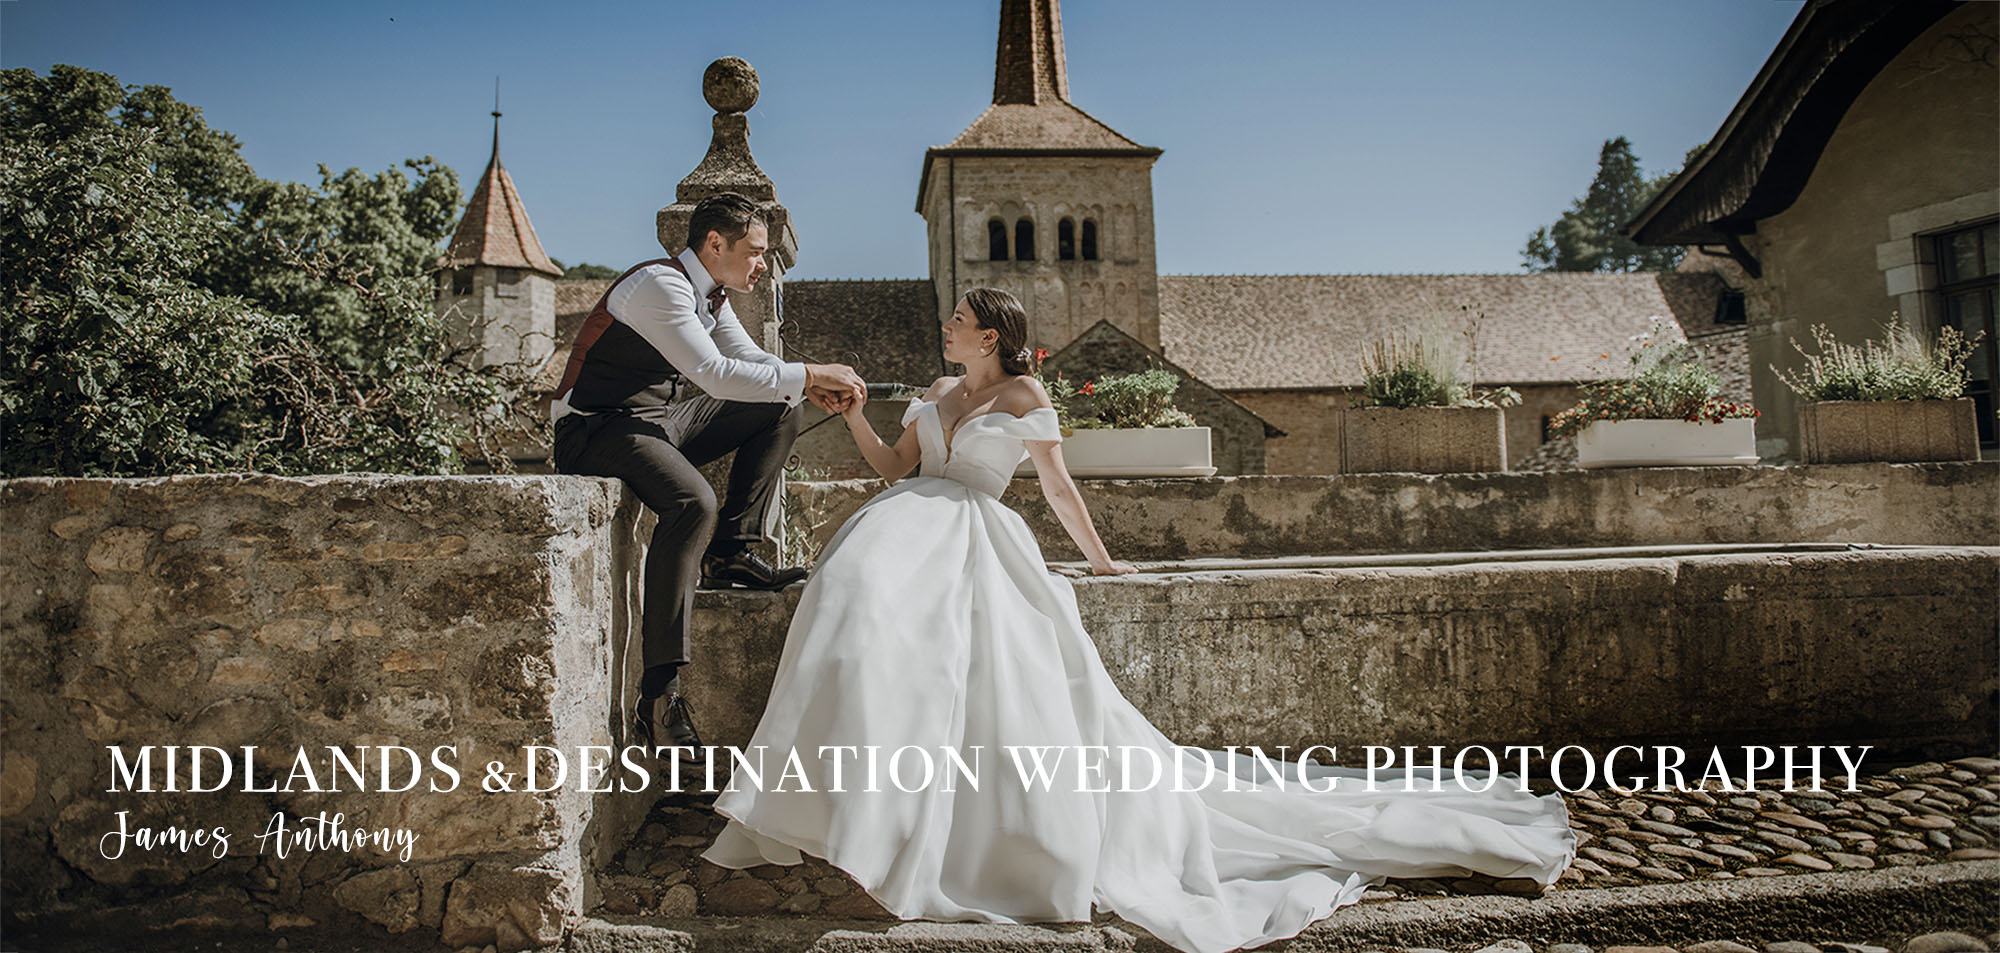 midlands wedding photographer james anthony - destination wedding photographer fashionable weddings-002